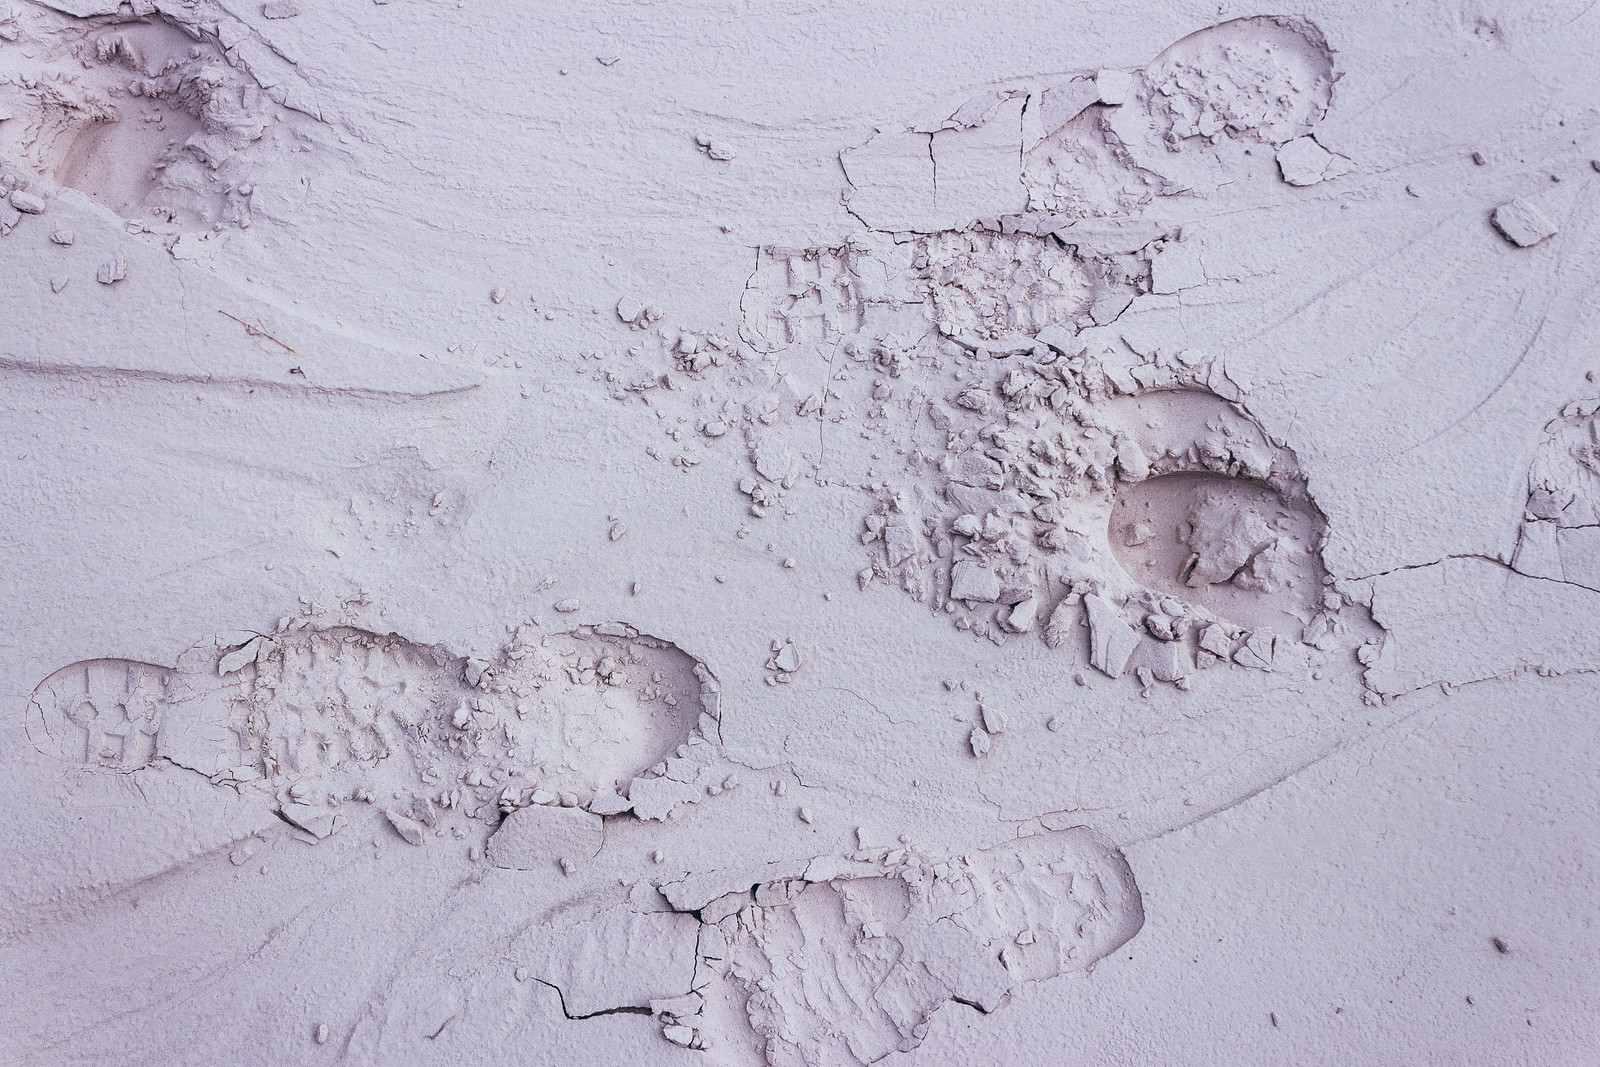 Footprints in the mud, Wahweap Creek, Utah